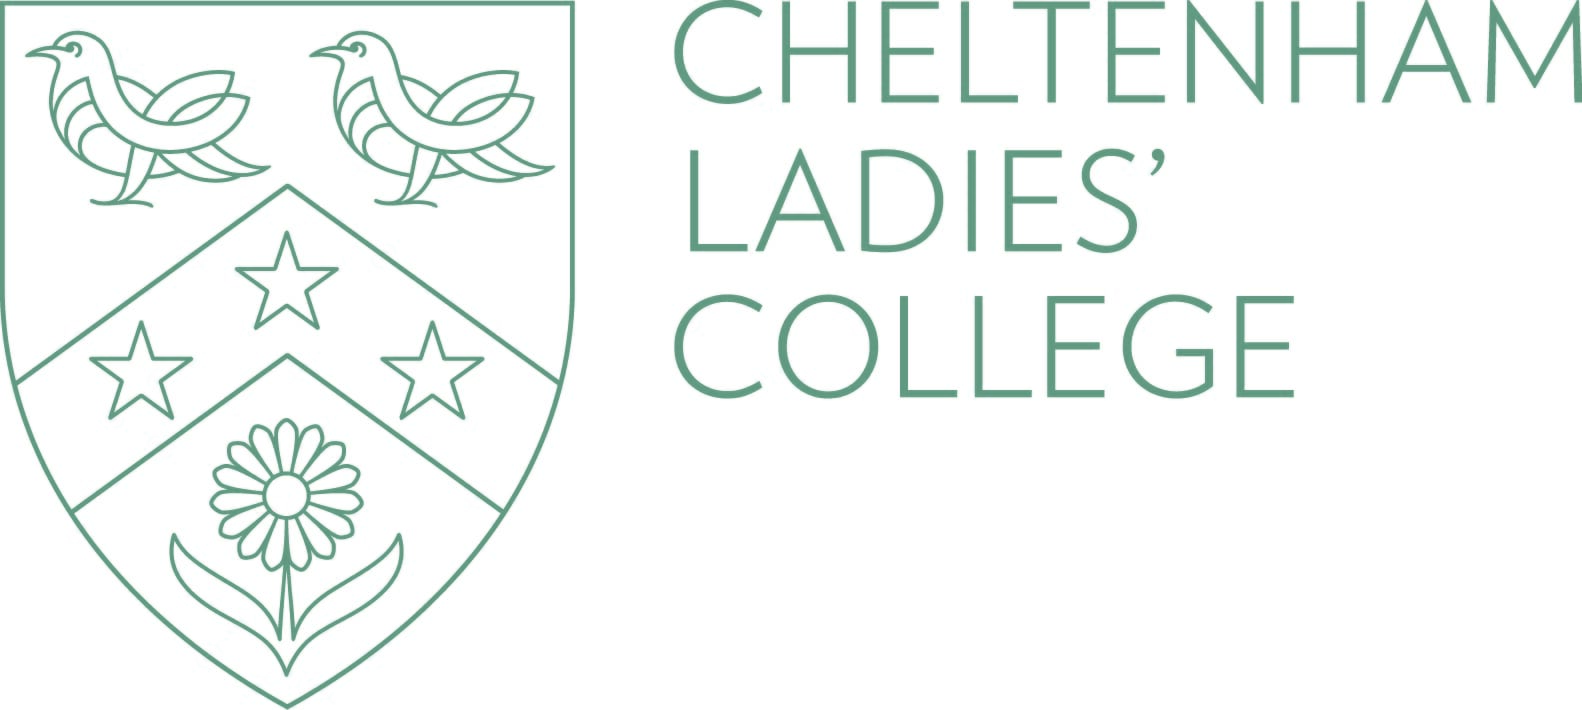 Cheltenham Ladies College.